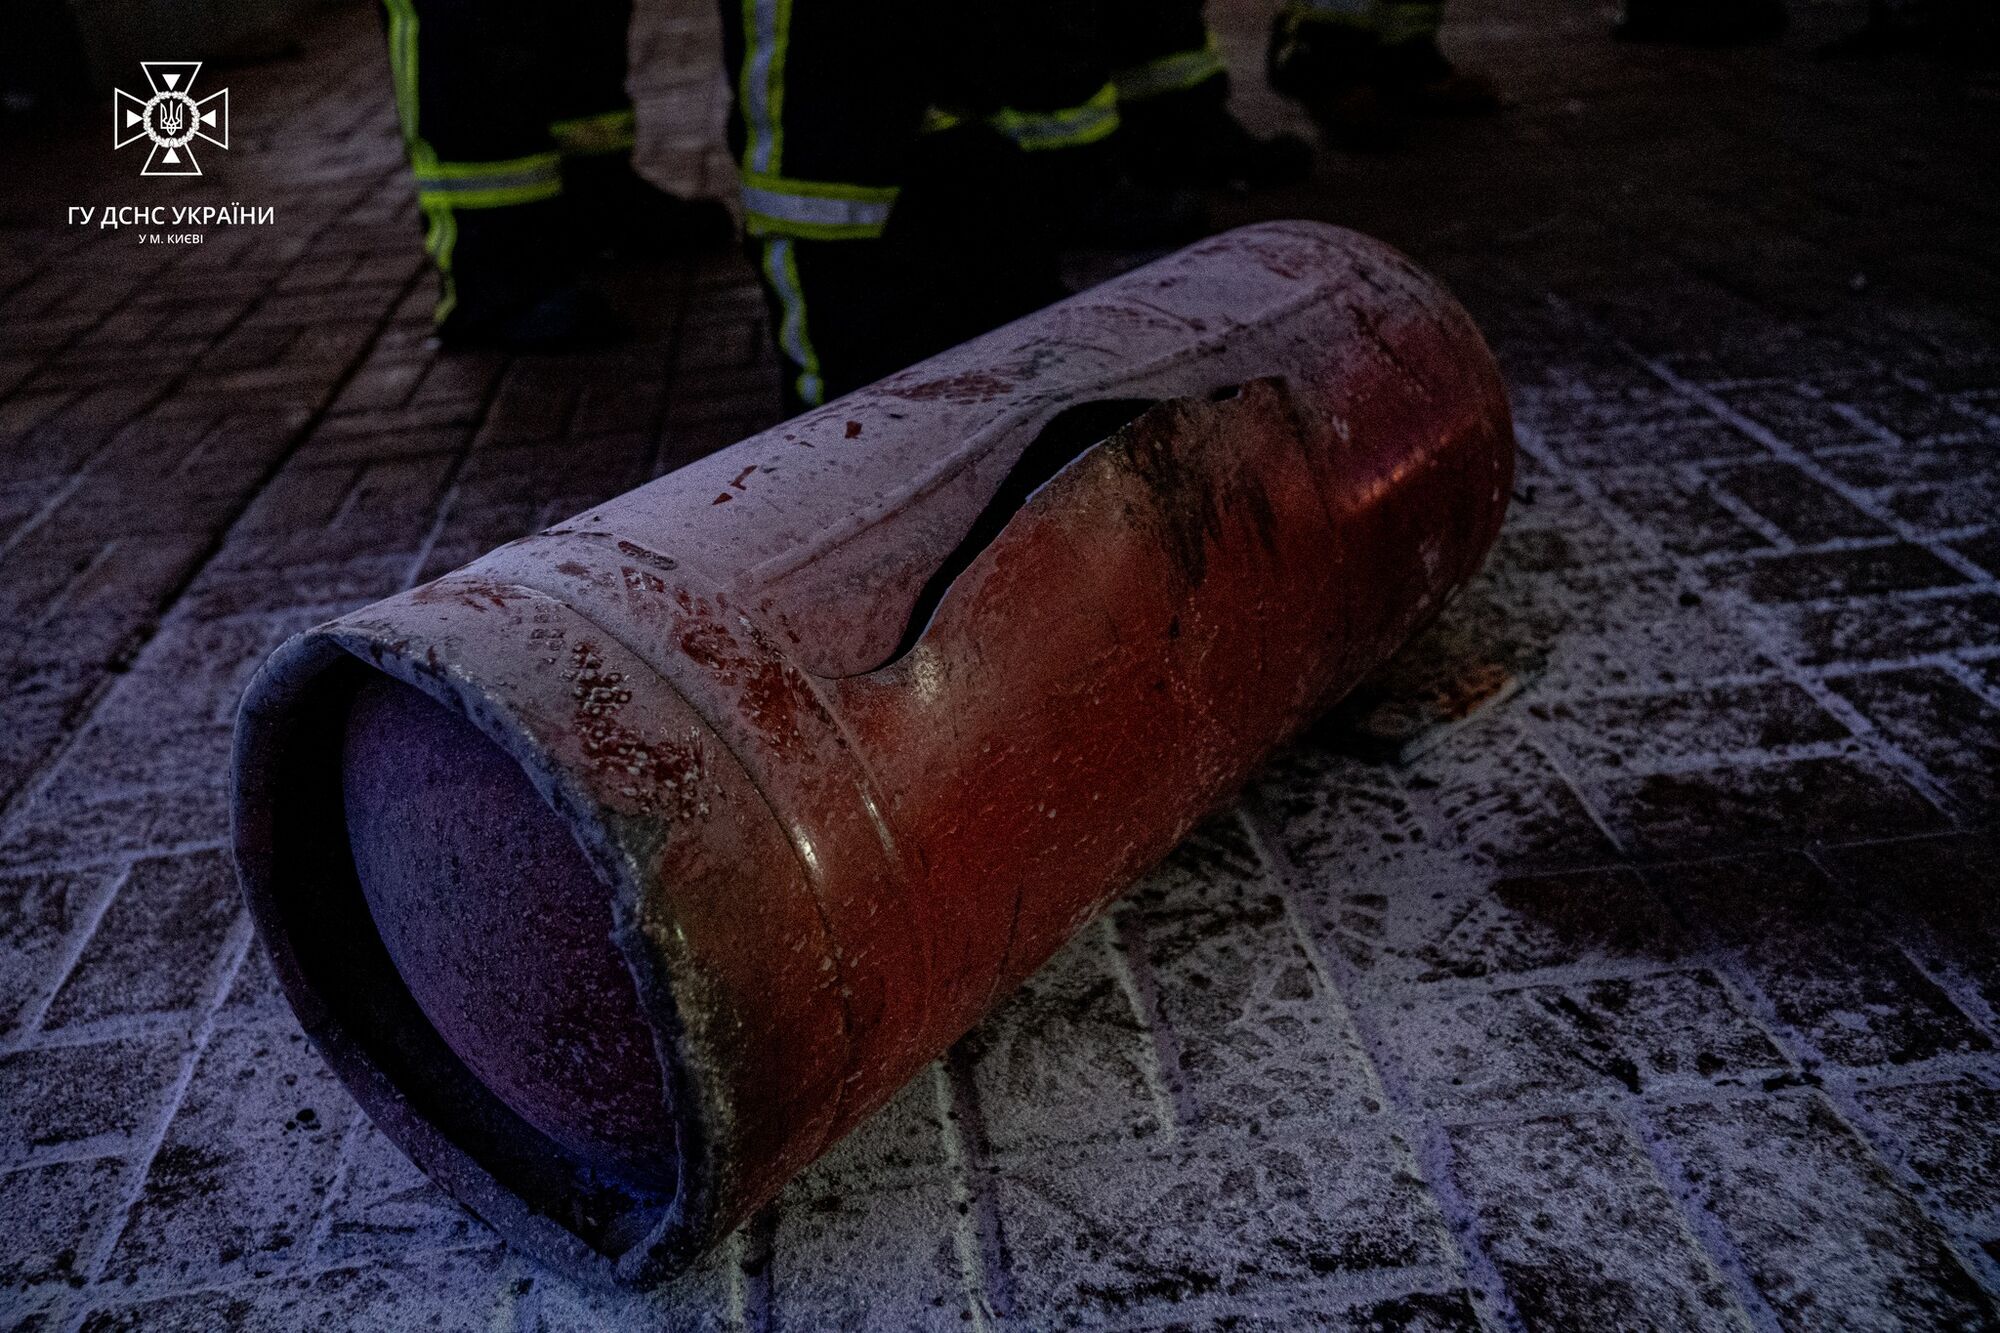 В Киеве взорвался газовый баллон в МАФе: пострадали пять человек. Фото